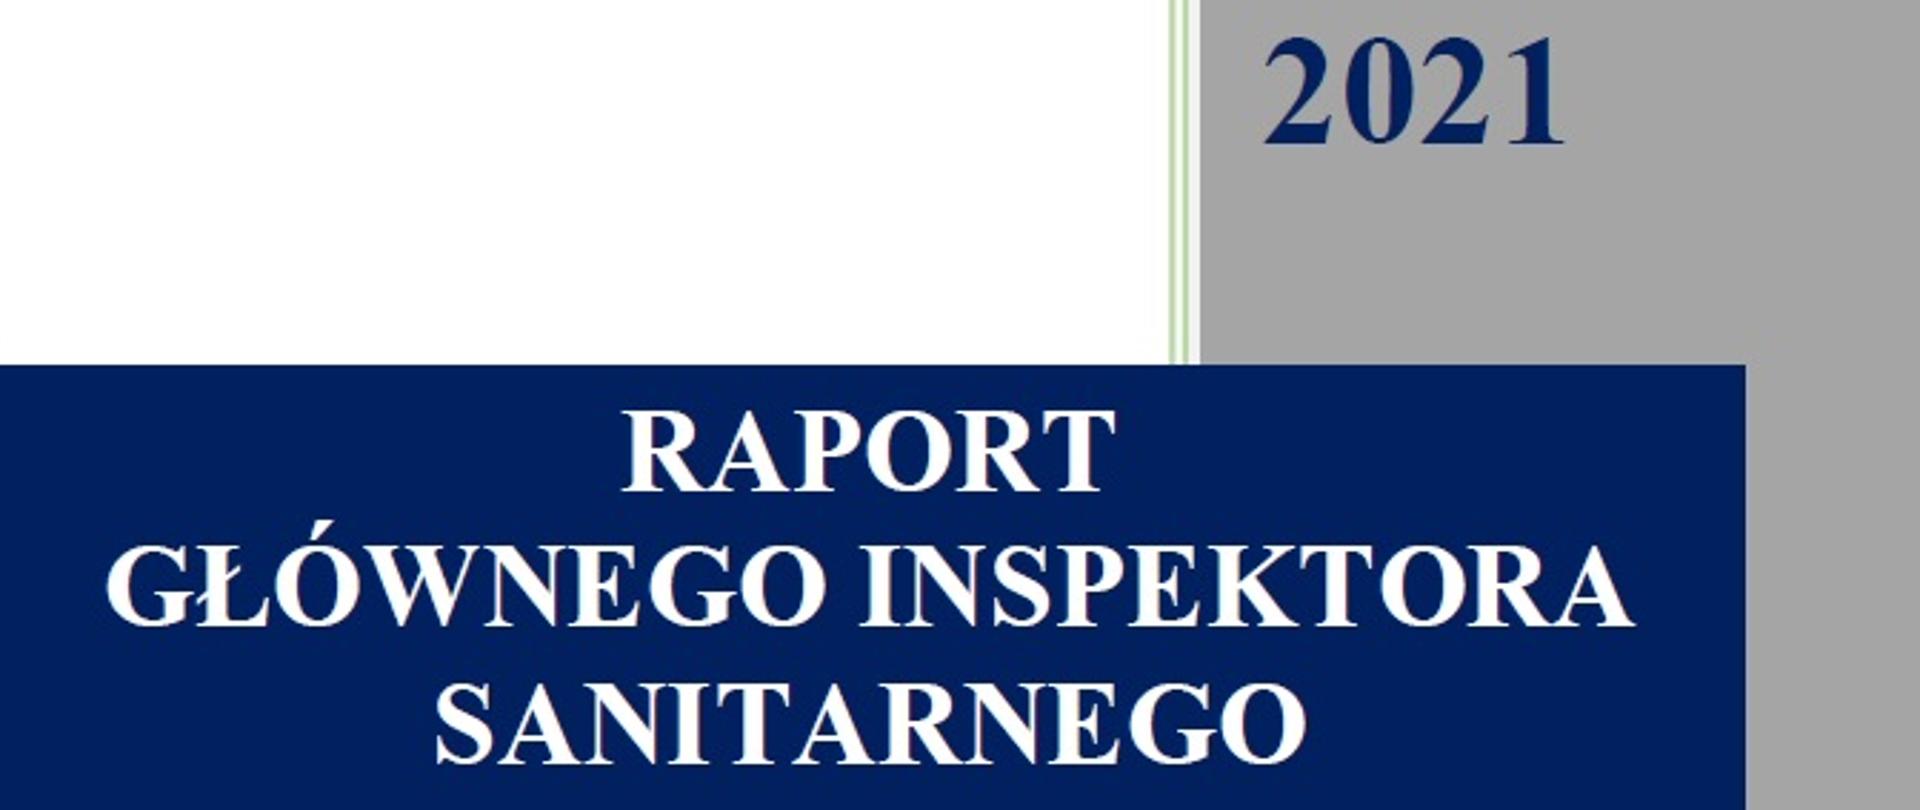 Grafika przedstawia napis "Raport Głównego Inspektora Sanitarnego"